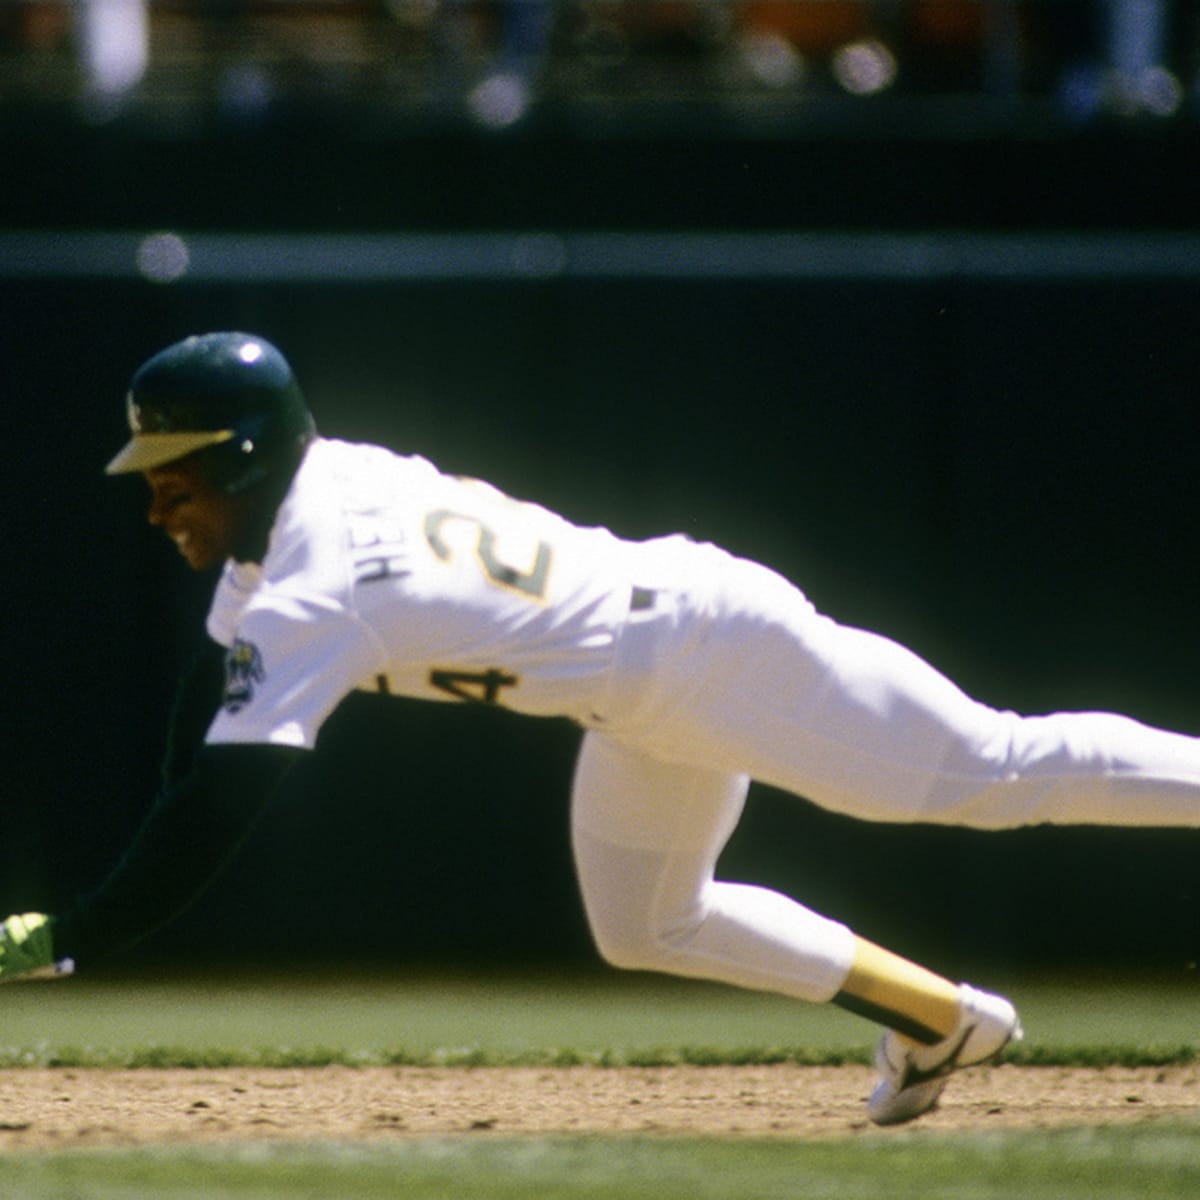 1990 Rickey Henderson World Series Game Worn Oakland Athletics